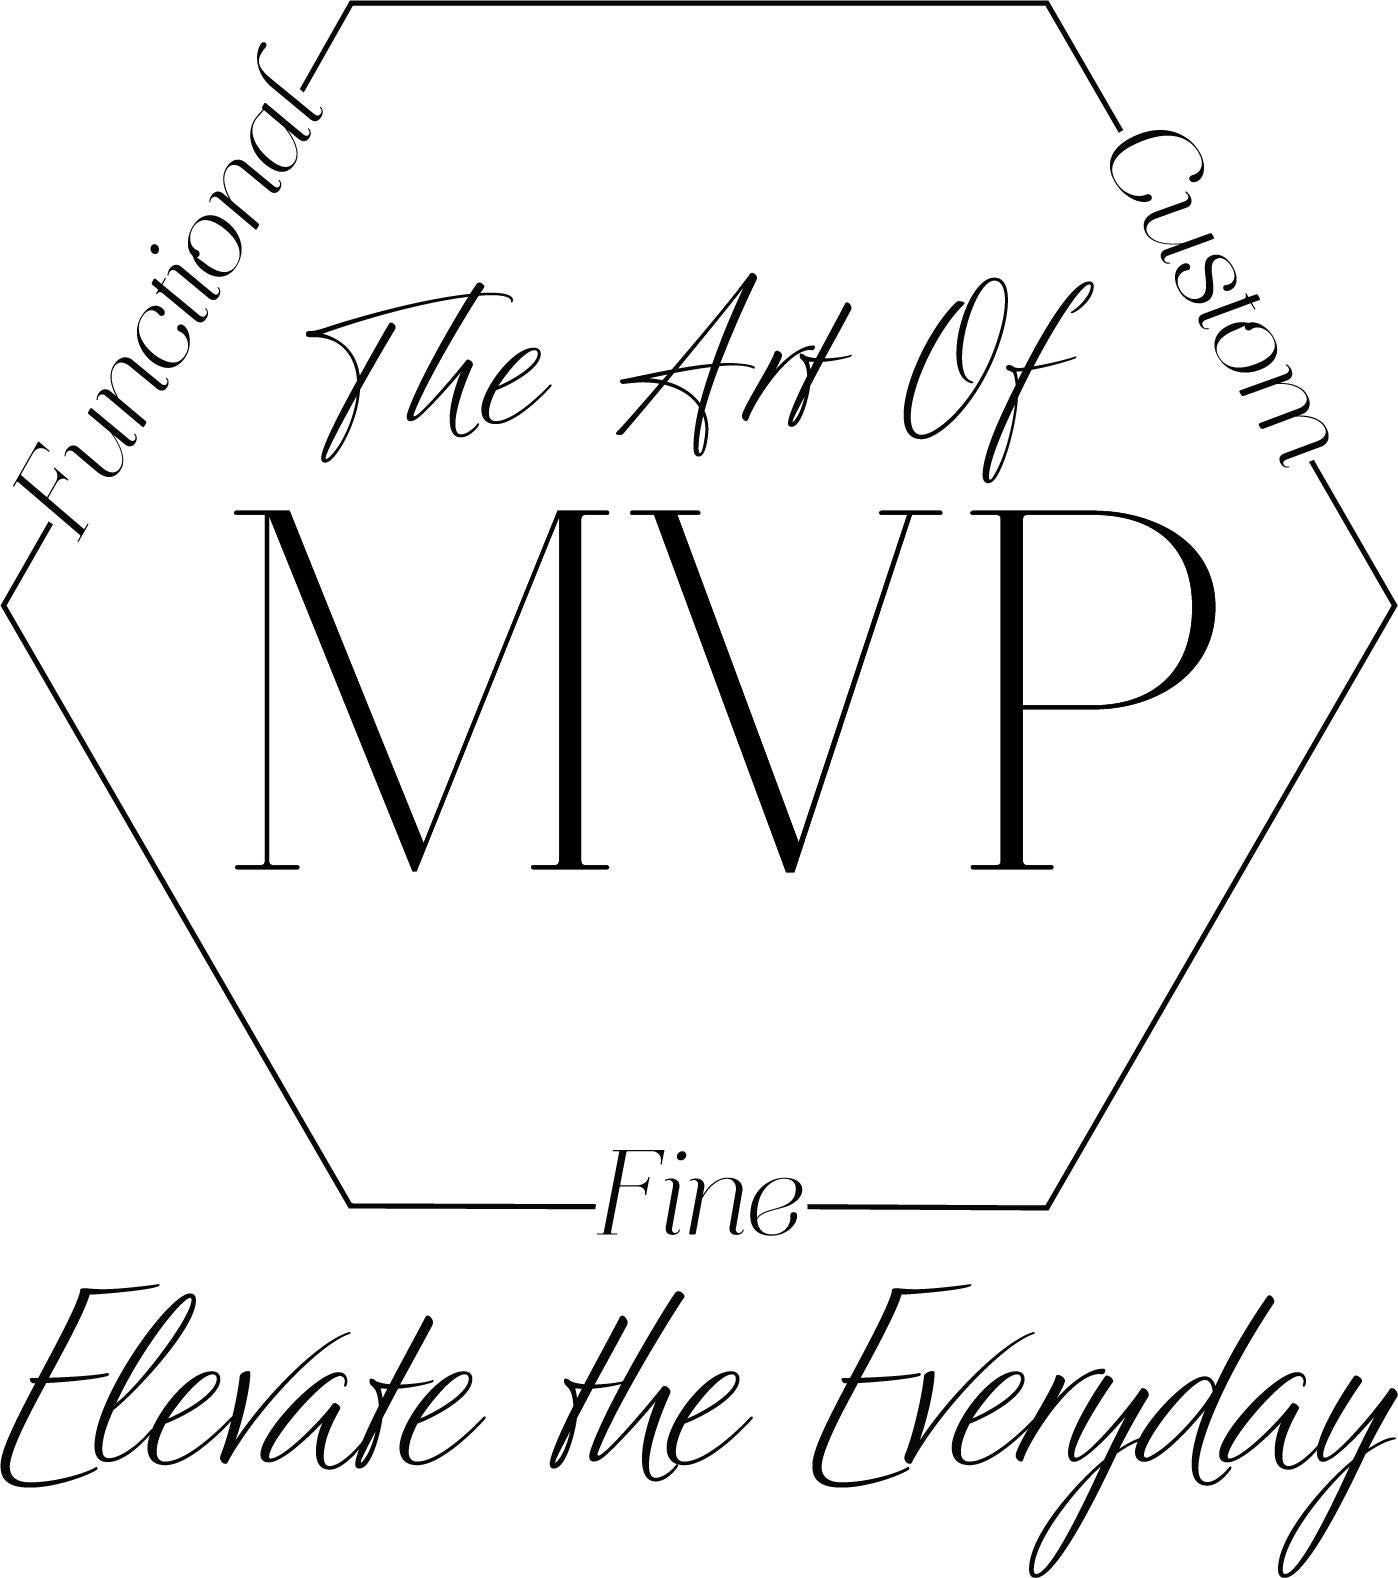 The Art of MVP